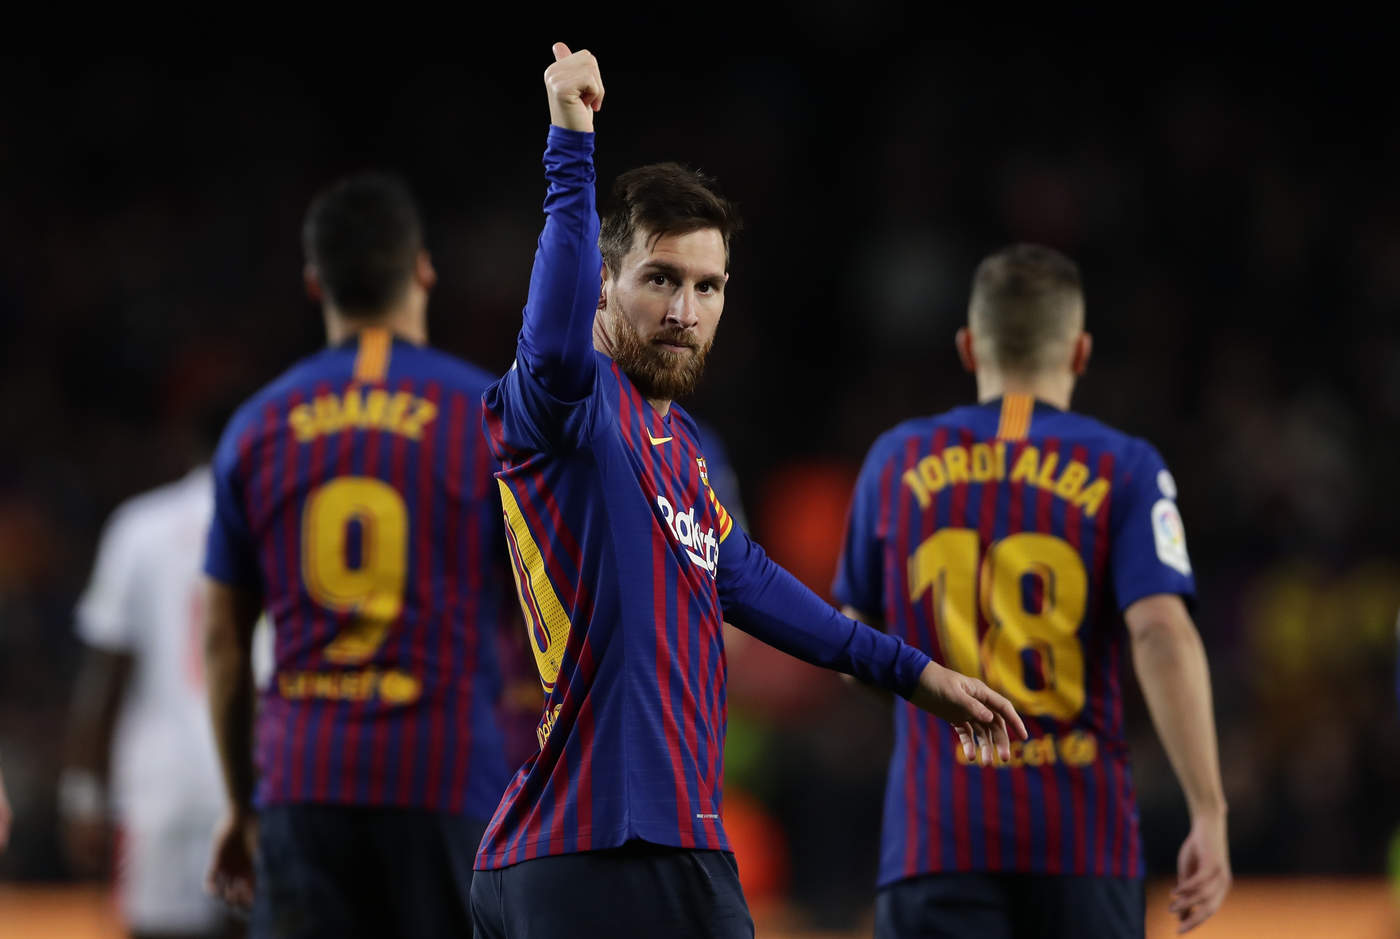 El atacante argentino del Barcelona, Lionel Messi, marcó uno de los goles que su equipo endosó al Eibar en el Camp Nou y alcanzó los 400 tantos.